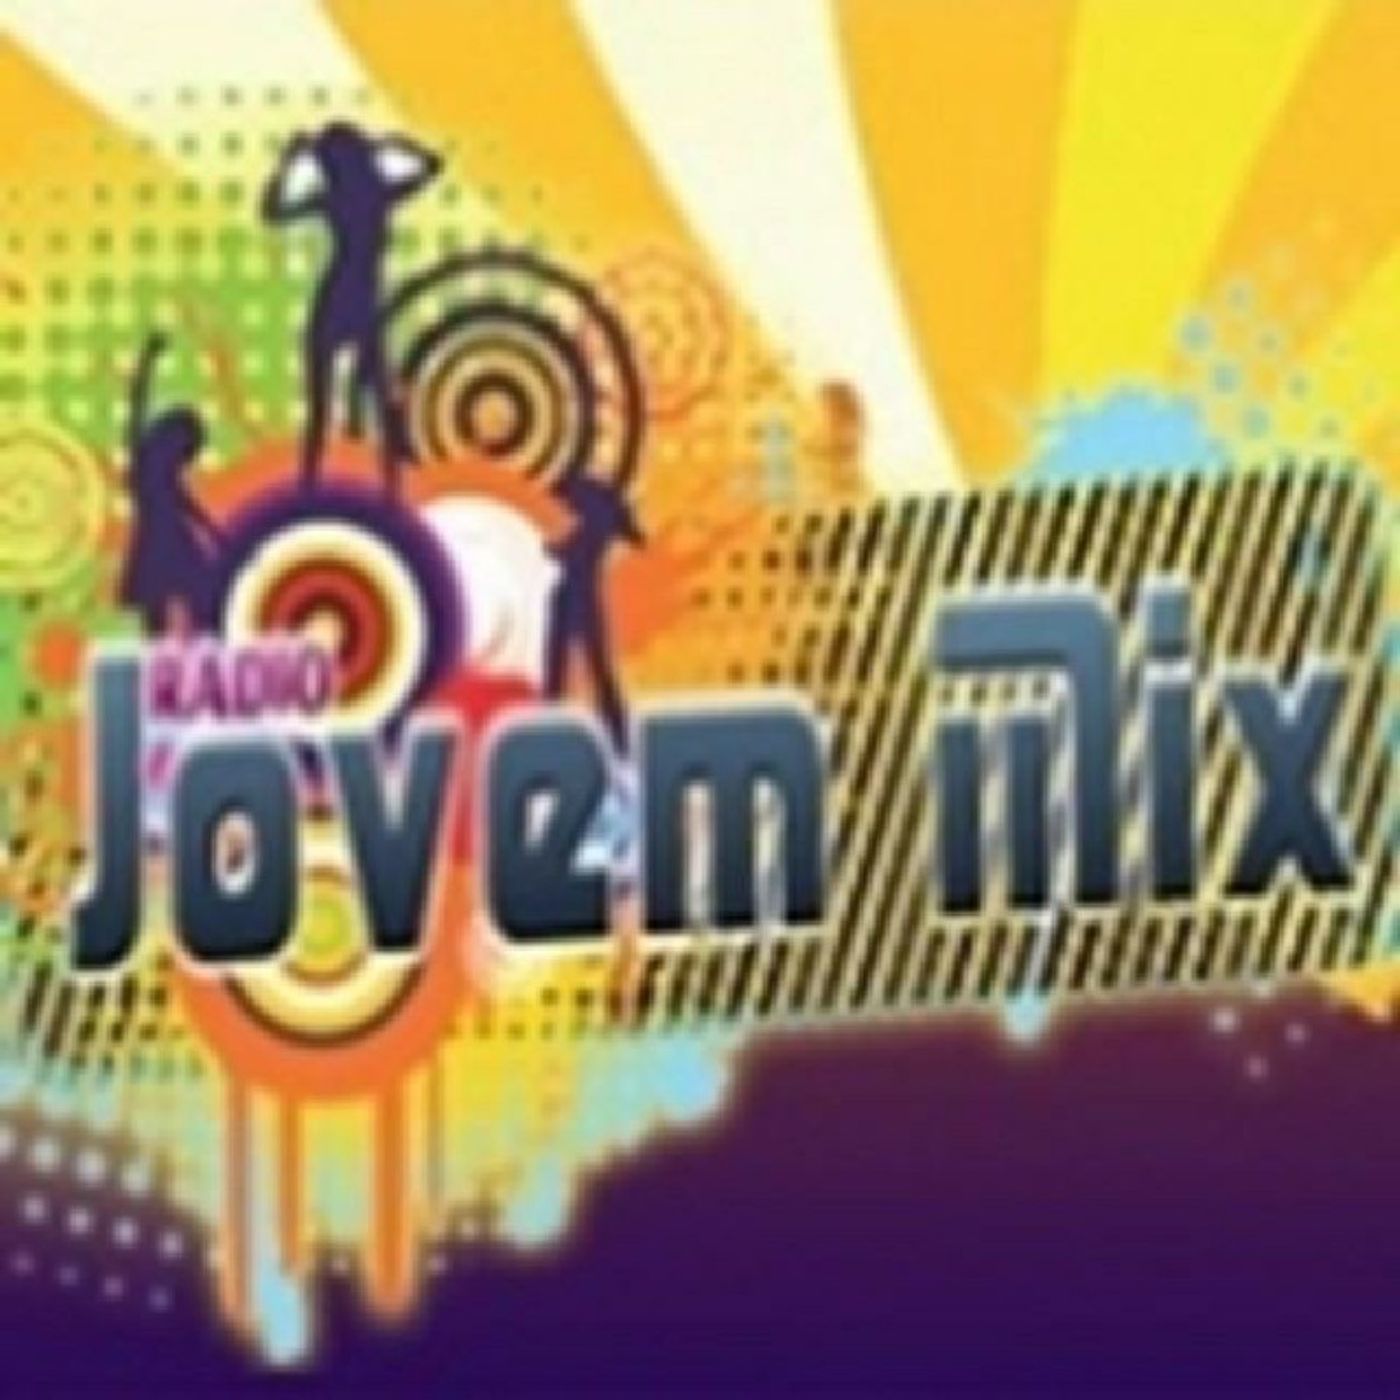 Rádio Jovem Mix